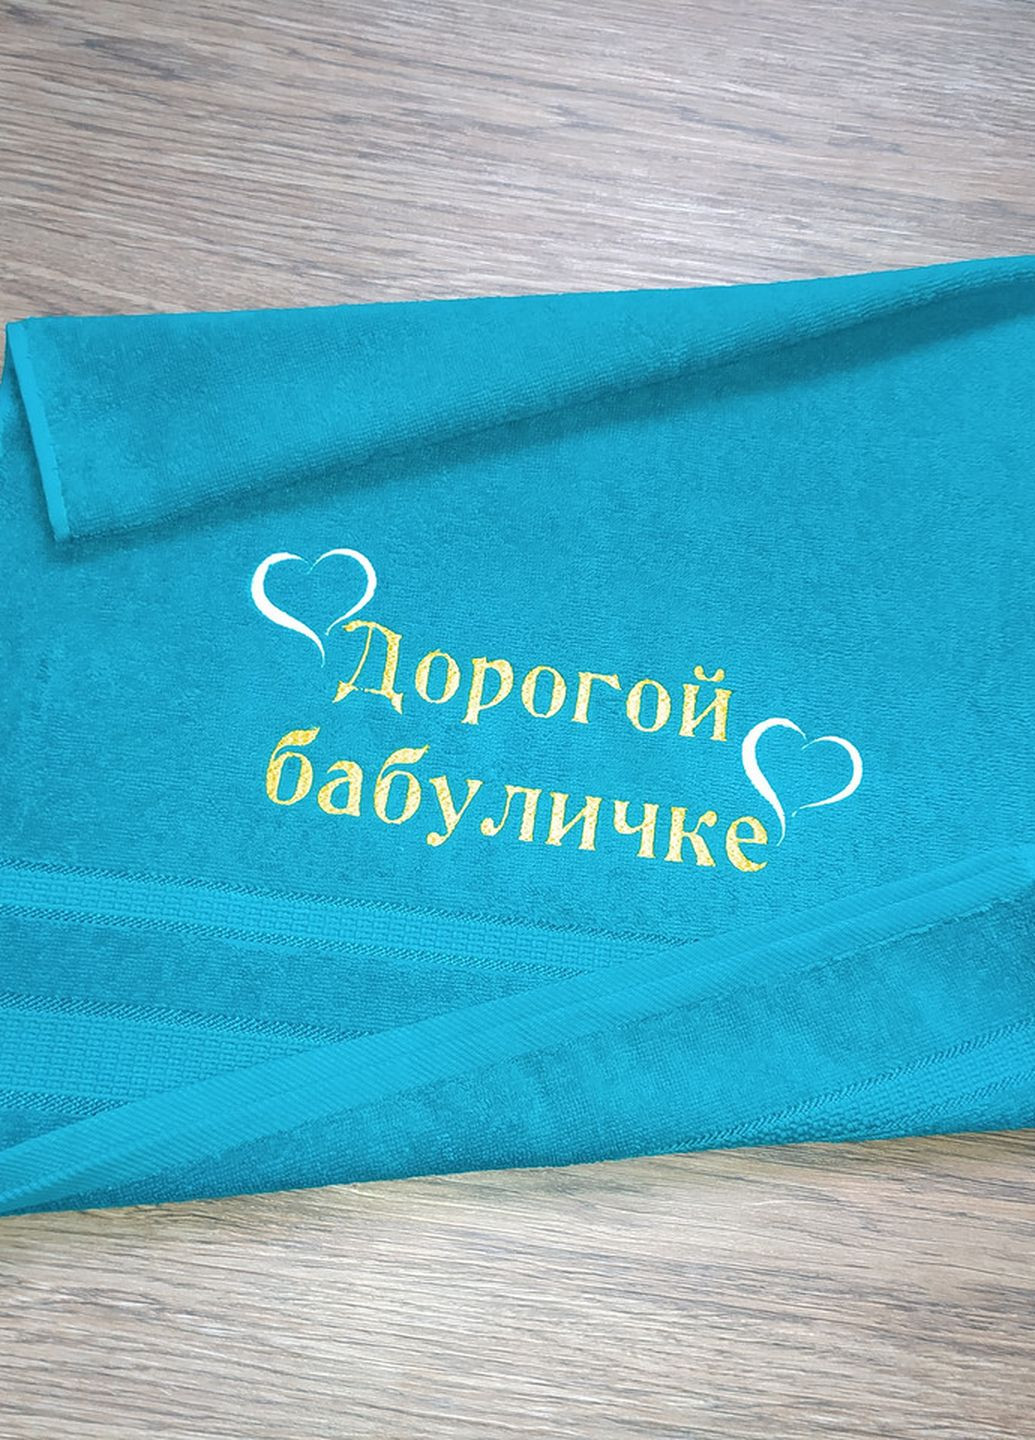 No Brand полотенце с вышивкой махровое лицевое 50*90 бирюзовый бабушке 00101 однотонный бирюзовый производство - Украина